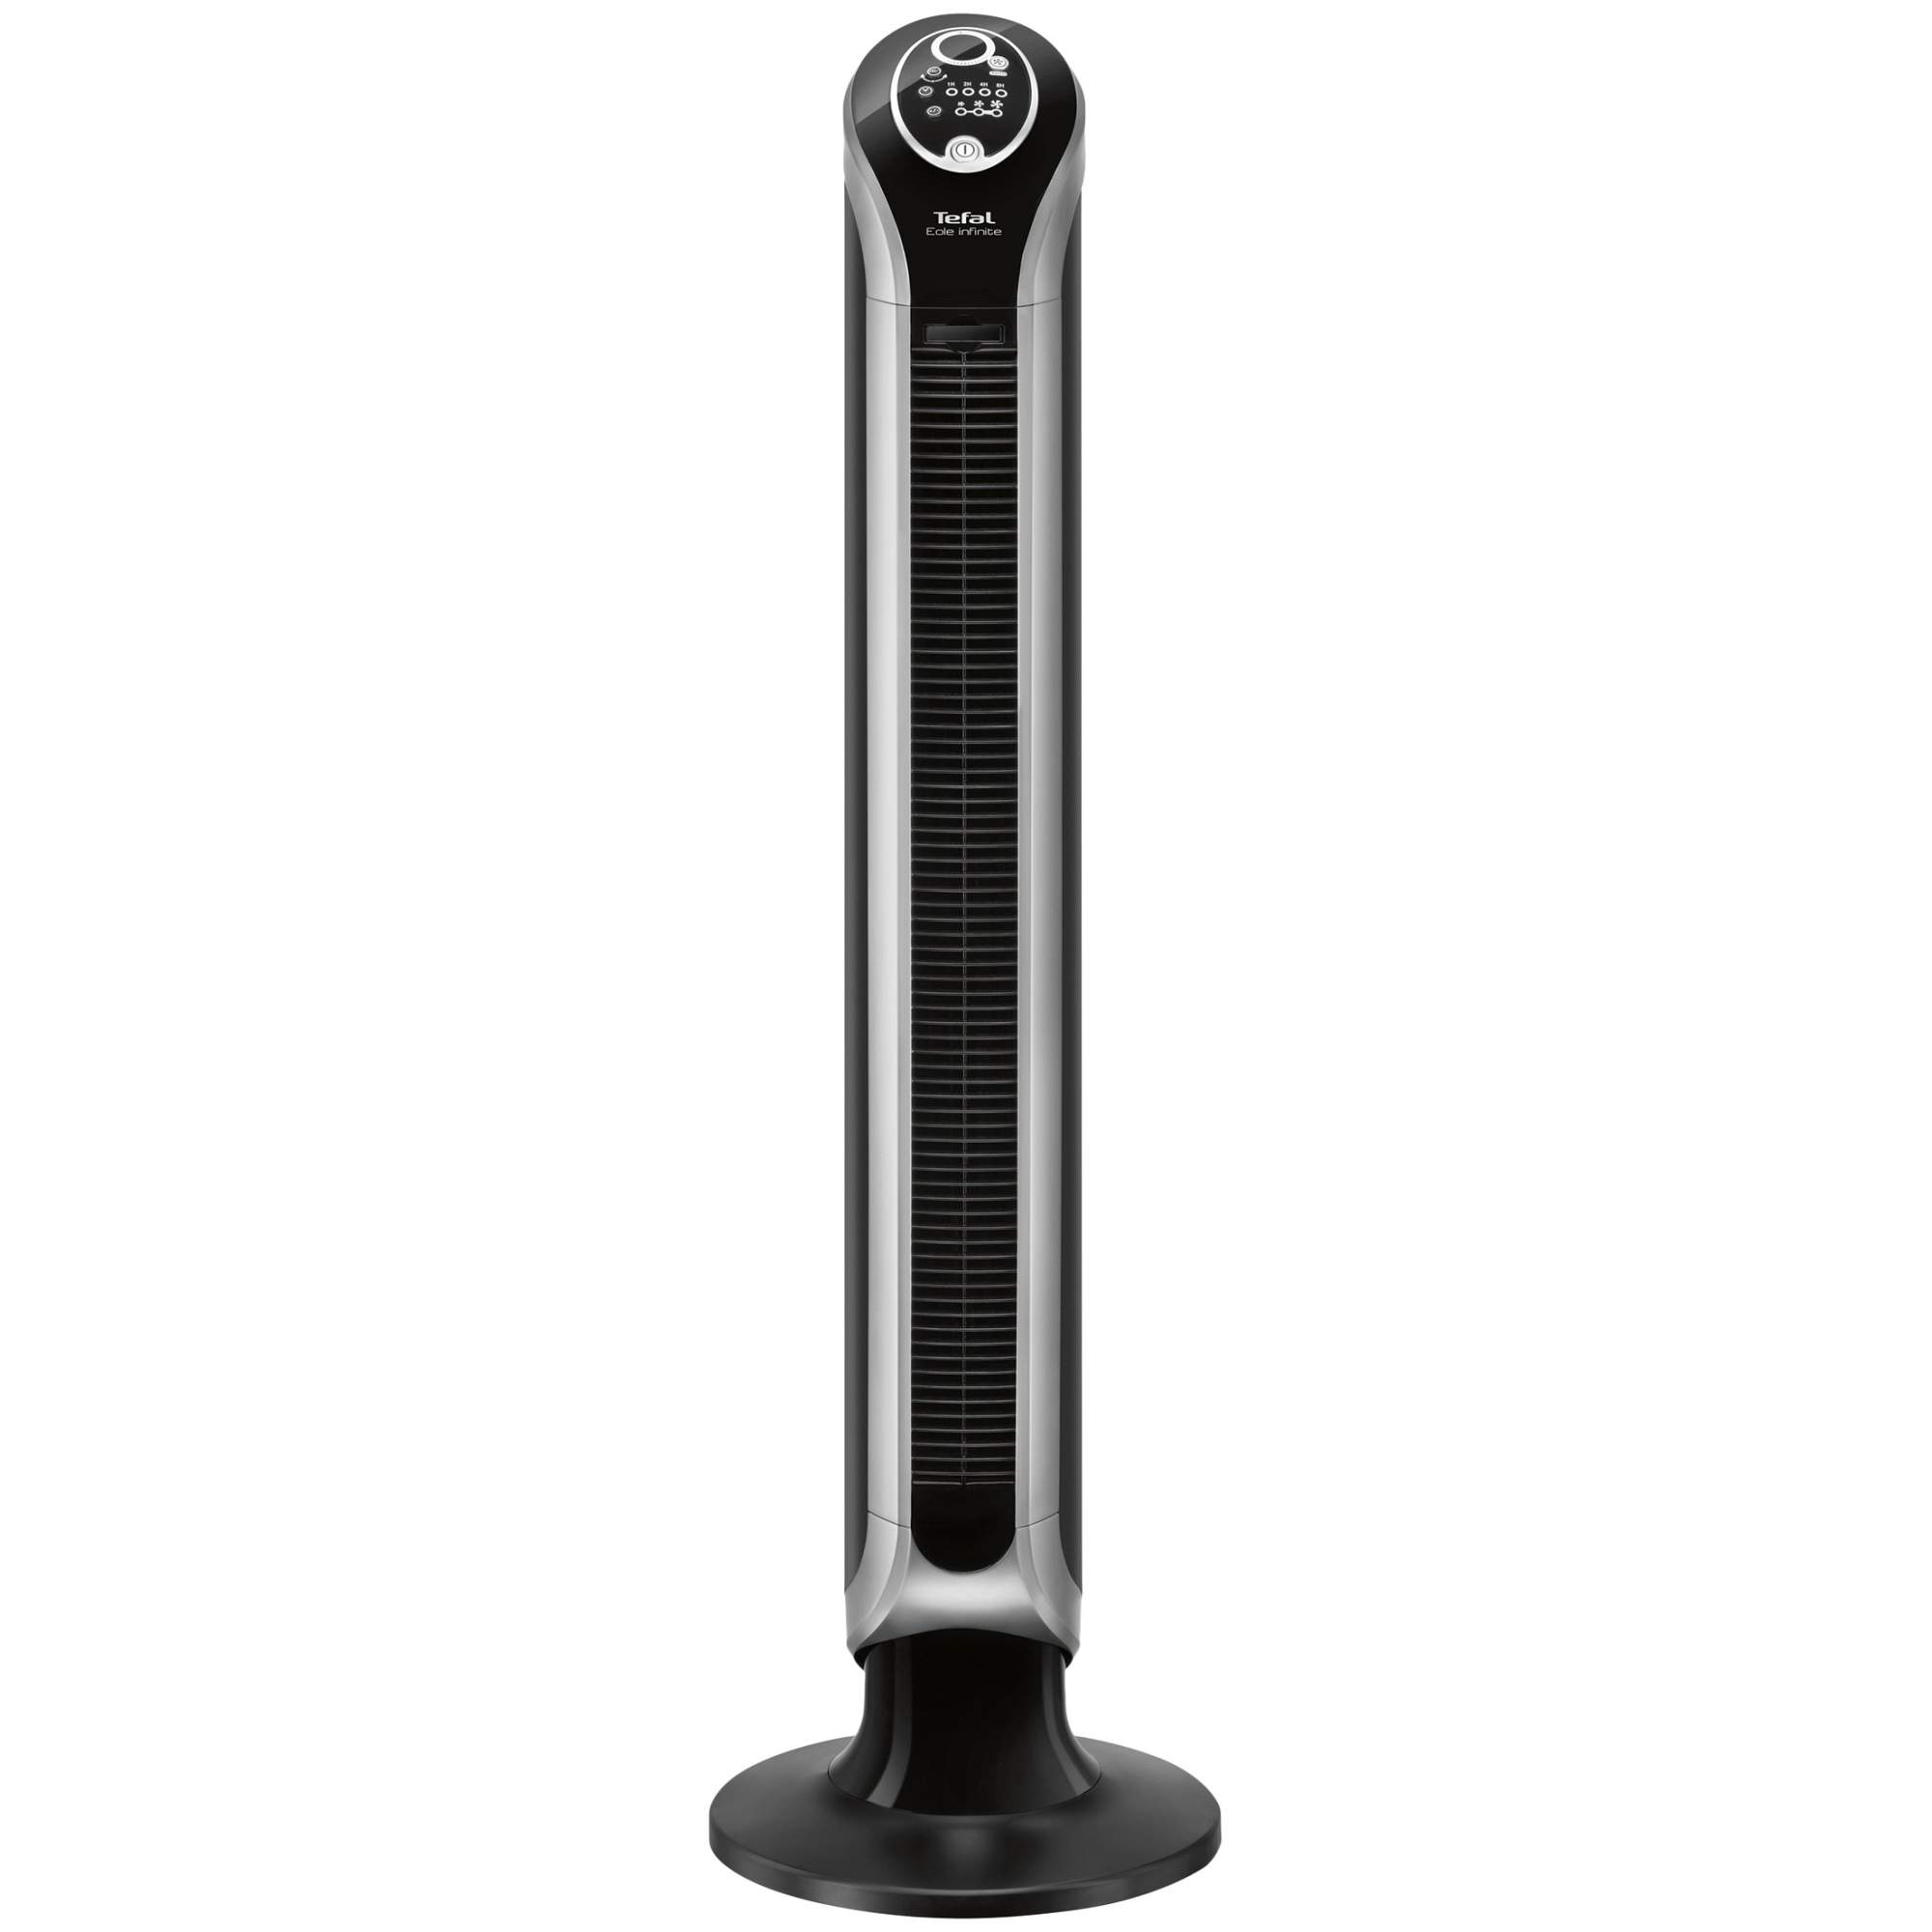 Вентилятор колонный Tefal VF6670 black, купить в Москве, цены в интернет-магазинах на Мегамаркет